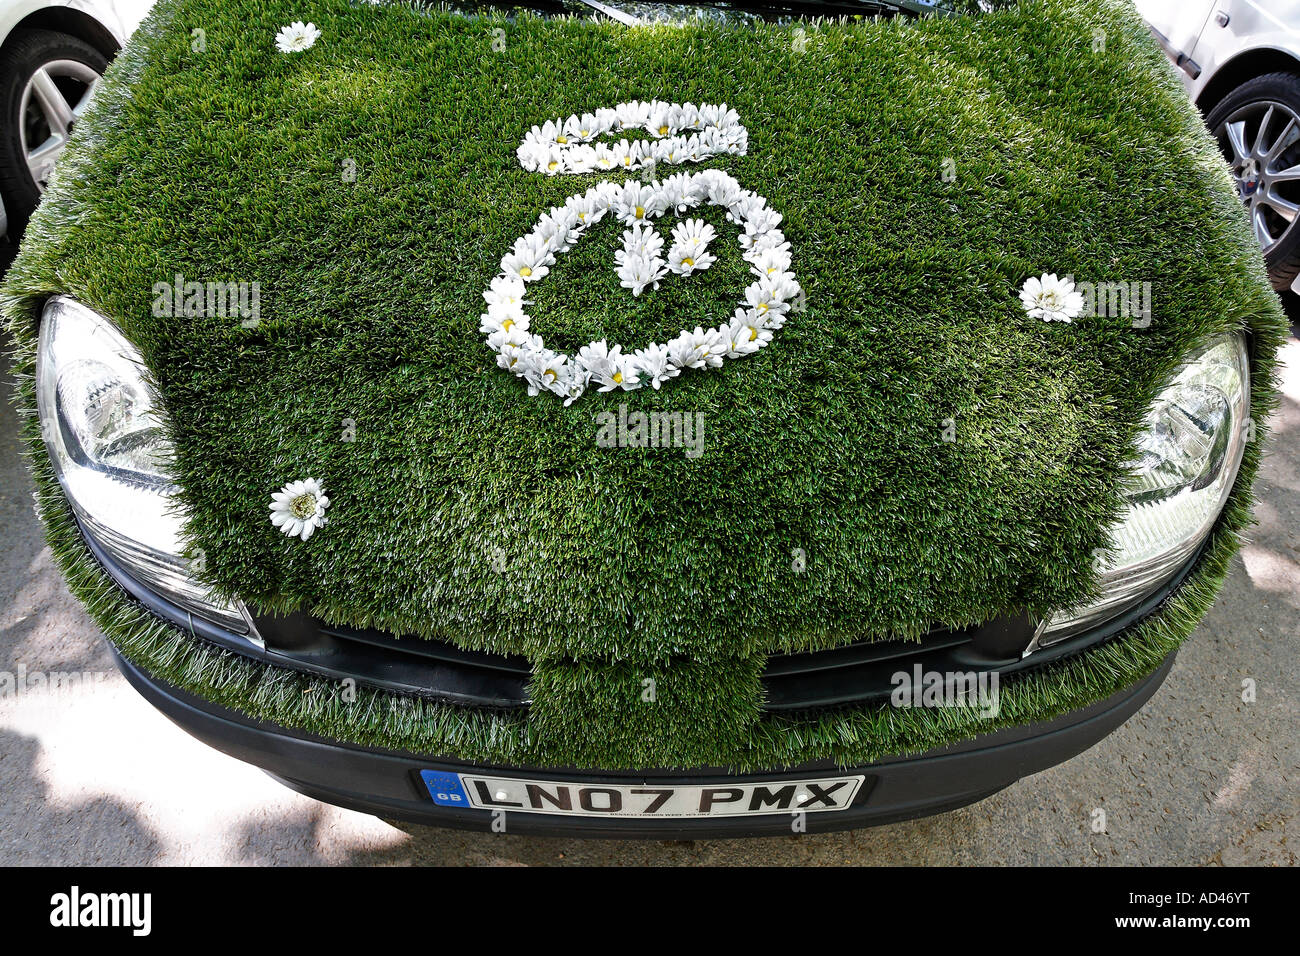 Drôle voiture respectueuse de l'environnement artificiel recouvert de lane, smiley avec halo fait de fleurs, Allemagne Banque D'Images